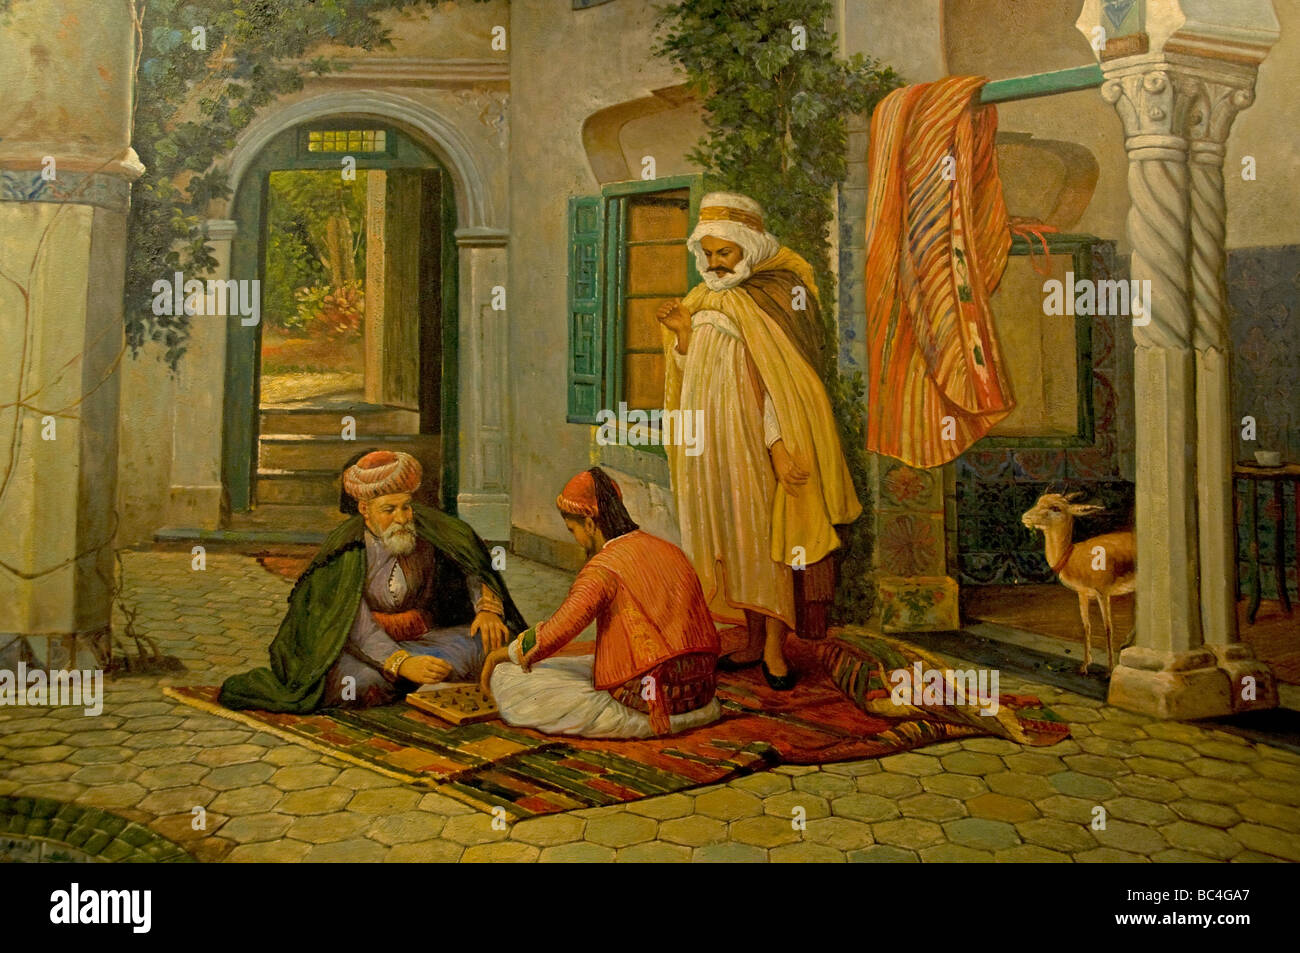 Peinture Art Islamique de Khan El Khalili Souk du Caire Égypte Bazaar Banque D'Images